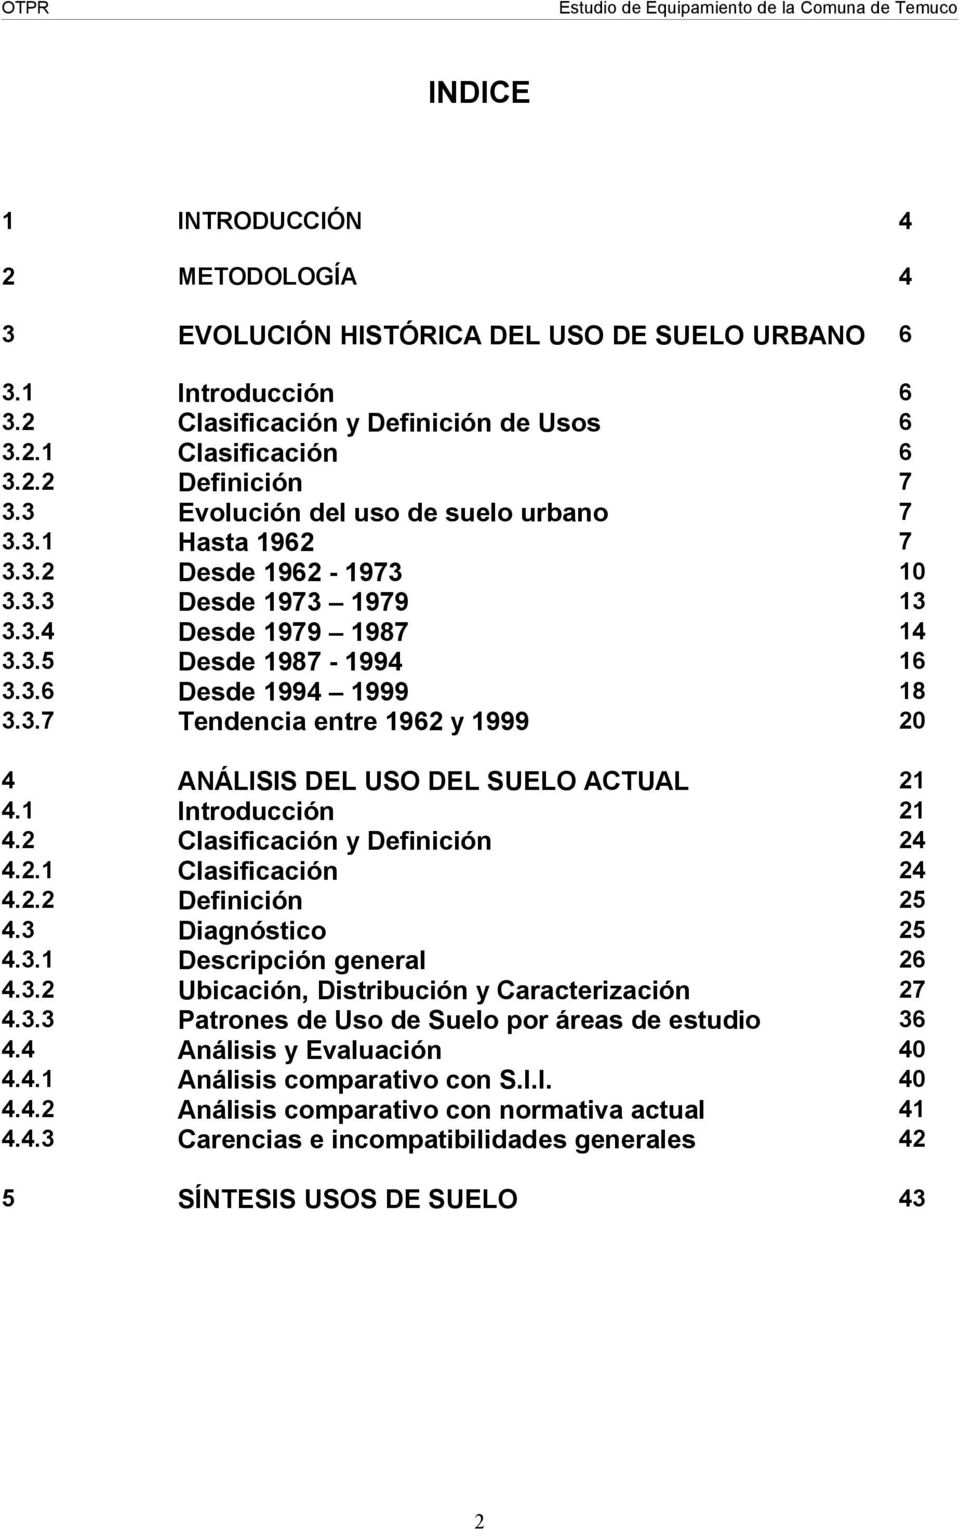 1 3.2 3.2.1 3.2.2 3.3 3.3.1 3.3.2 3.3.3 3.3.4 3.3.5 3.3.6 3.3.7 Introducción Clasificación y Definición de Usos Clasificación Definición Evolución del uso de suelo urbano Hasta 1962 Desde 1962-1973